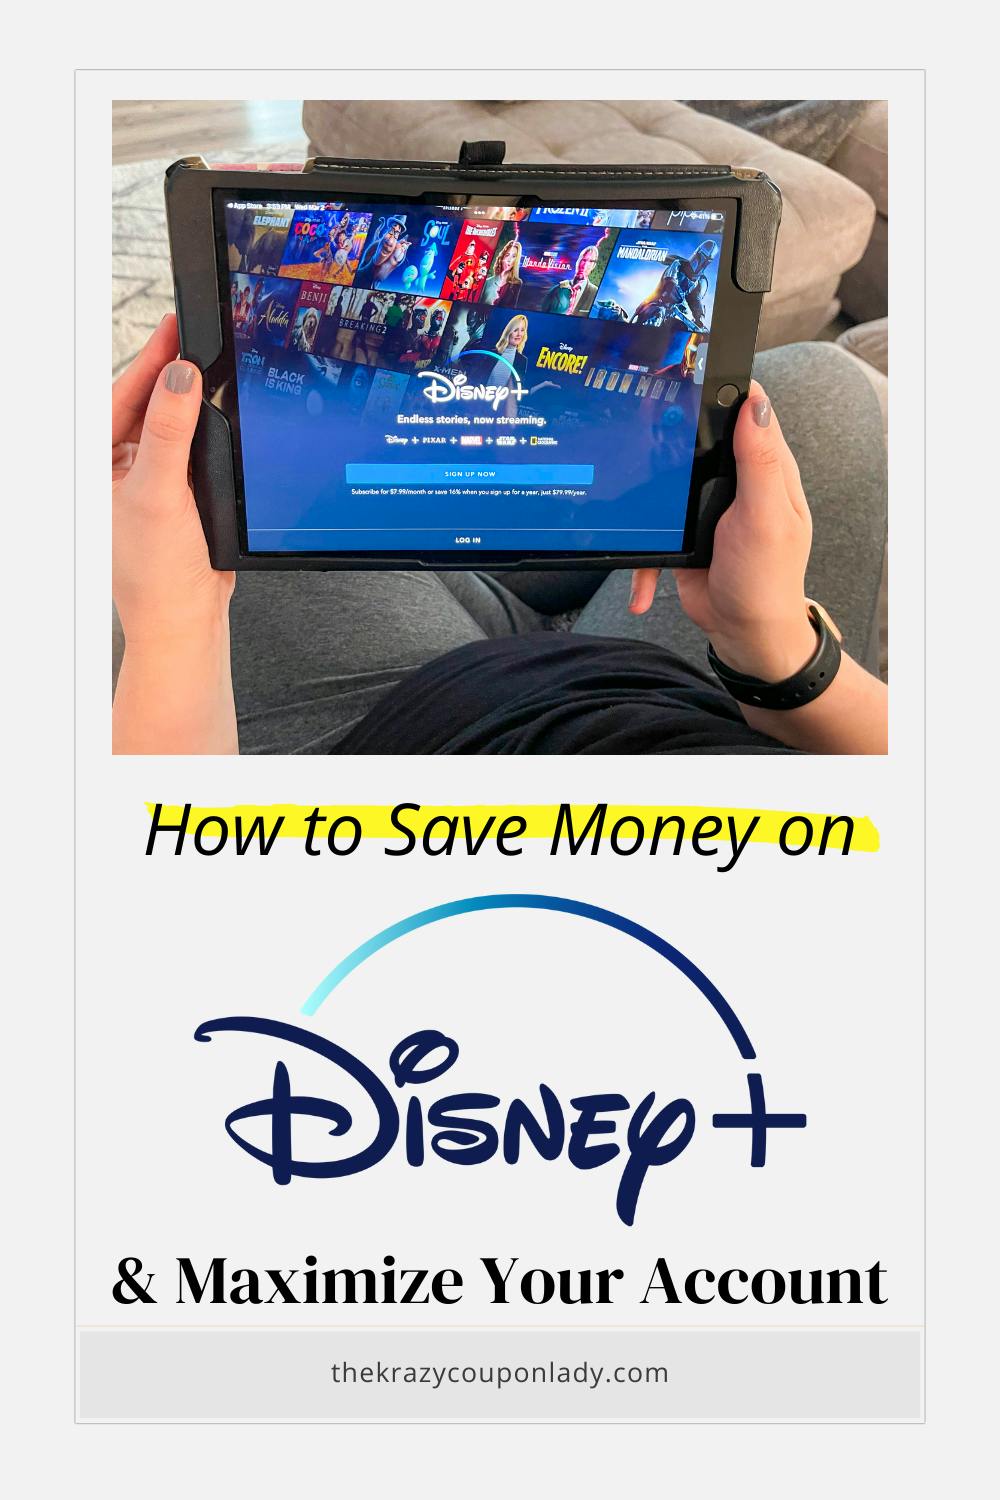 Disney Plus: Save Money & Maximize Your Account